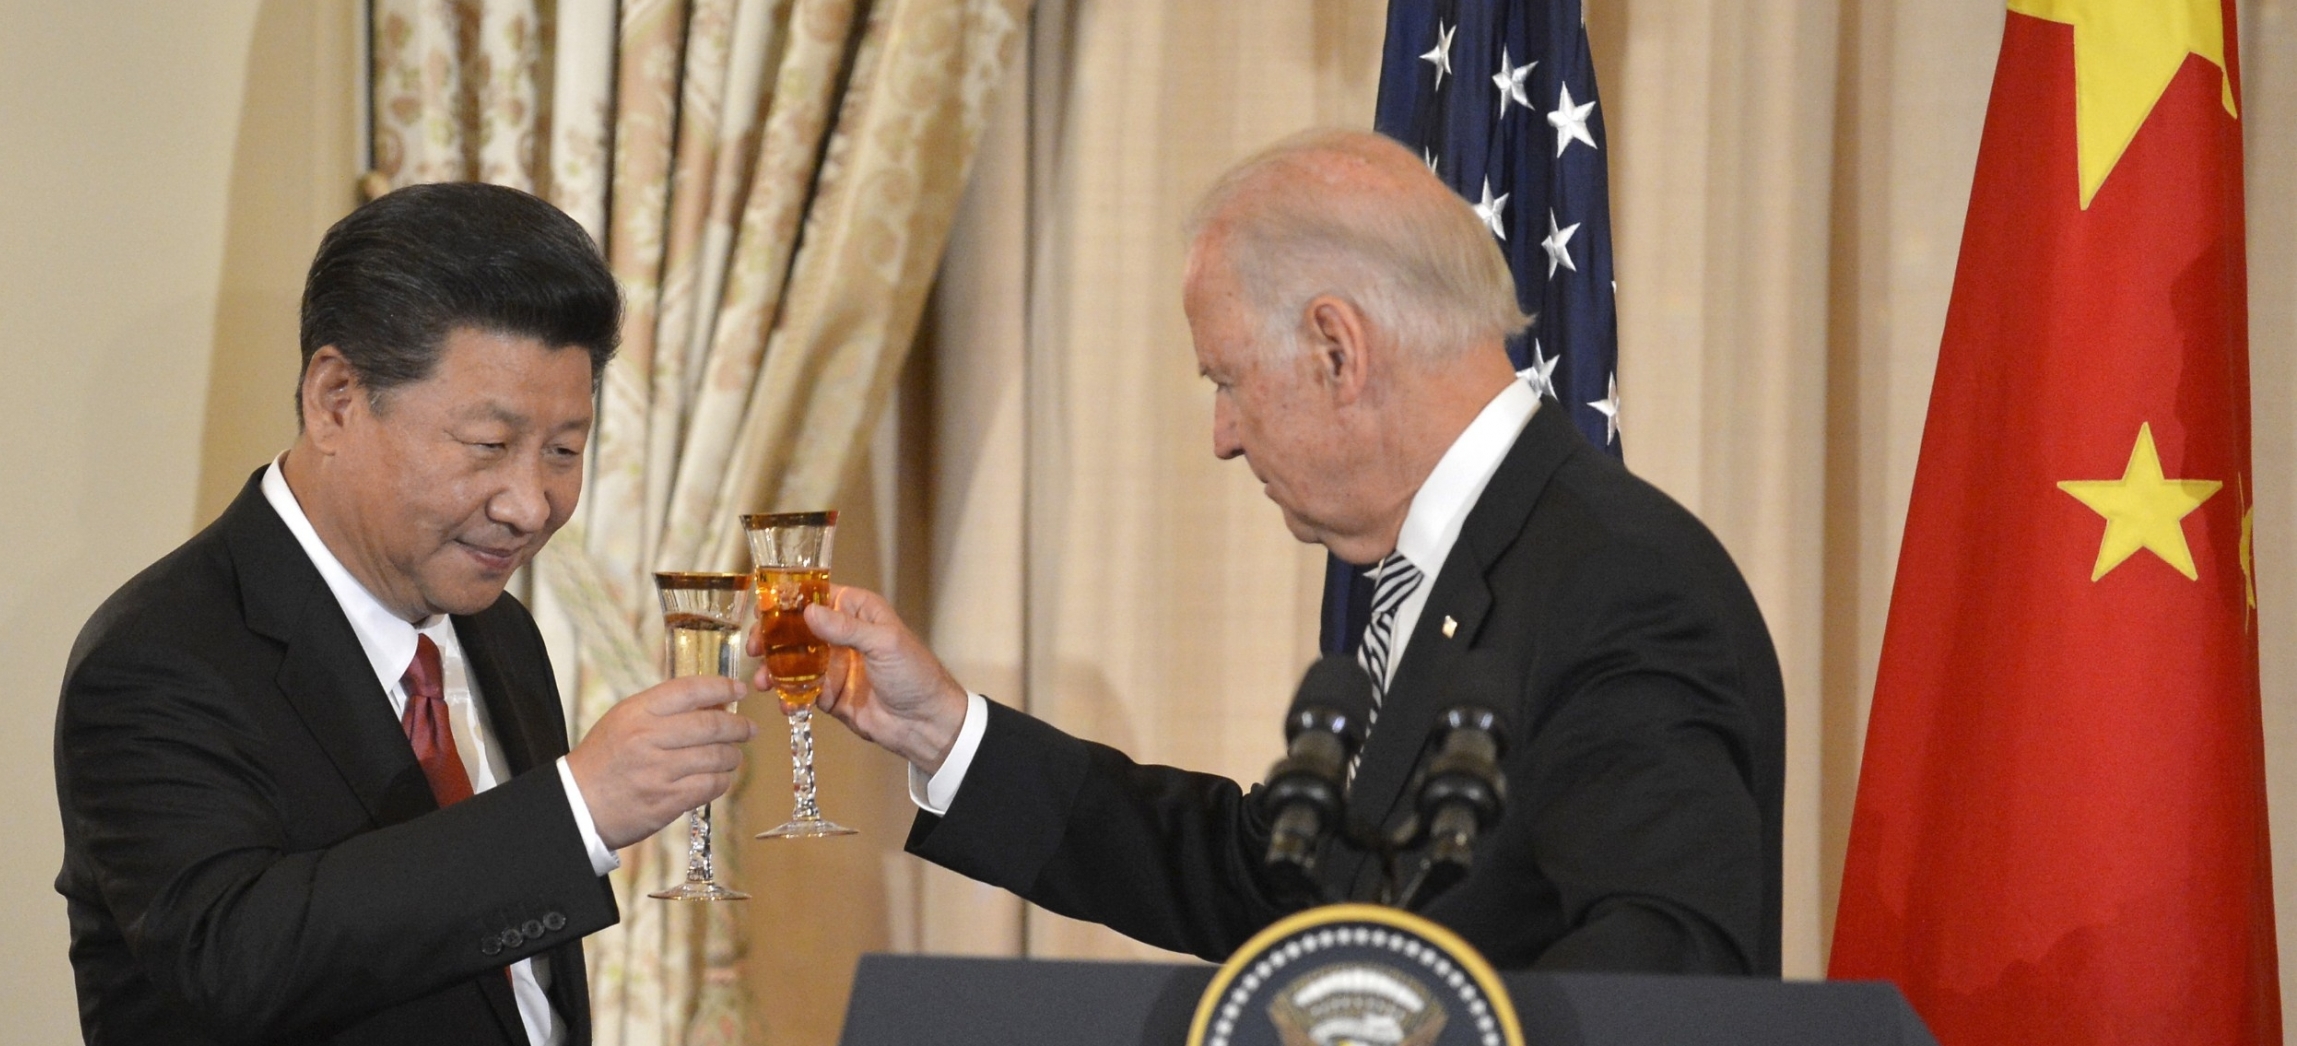 Joe Biden, alors vice-président de Barack Obama, trinque avec le président chinois Xi Jinping. (Source : PRI)